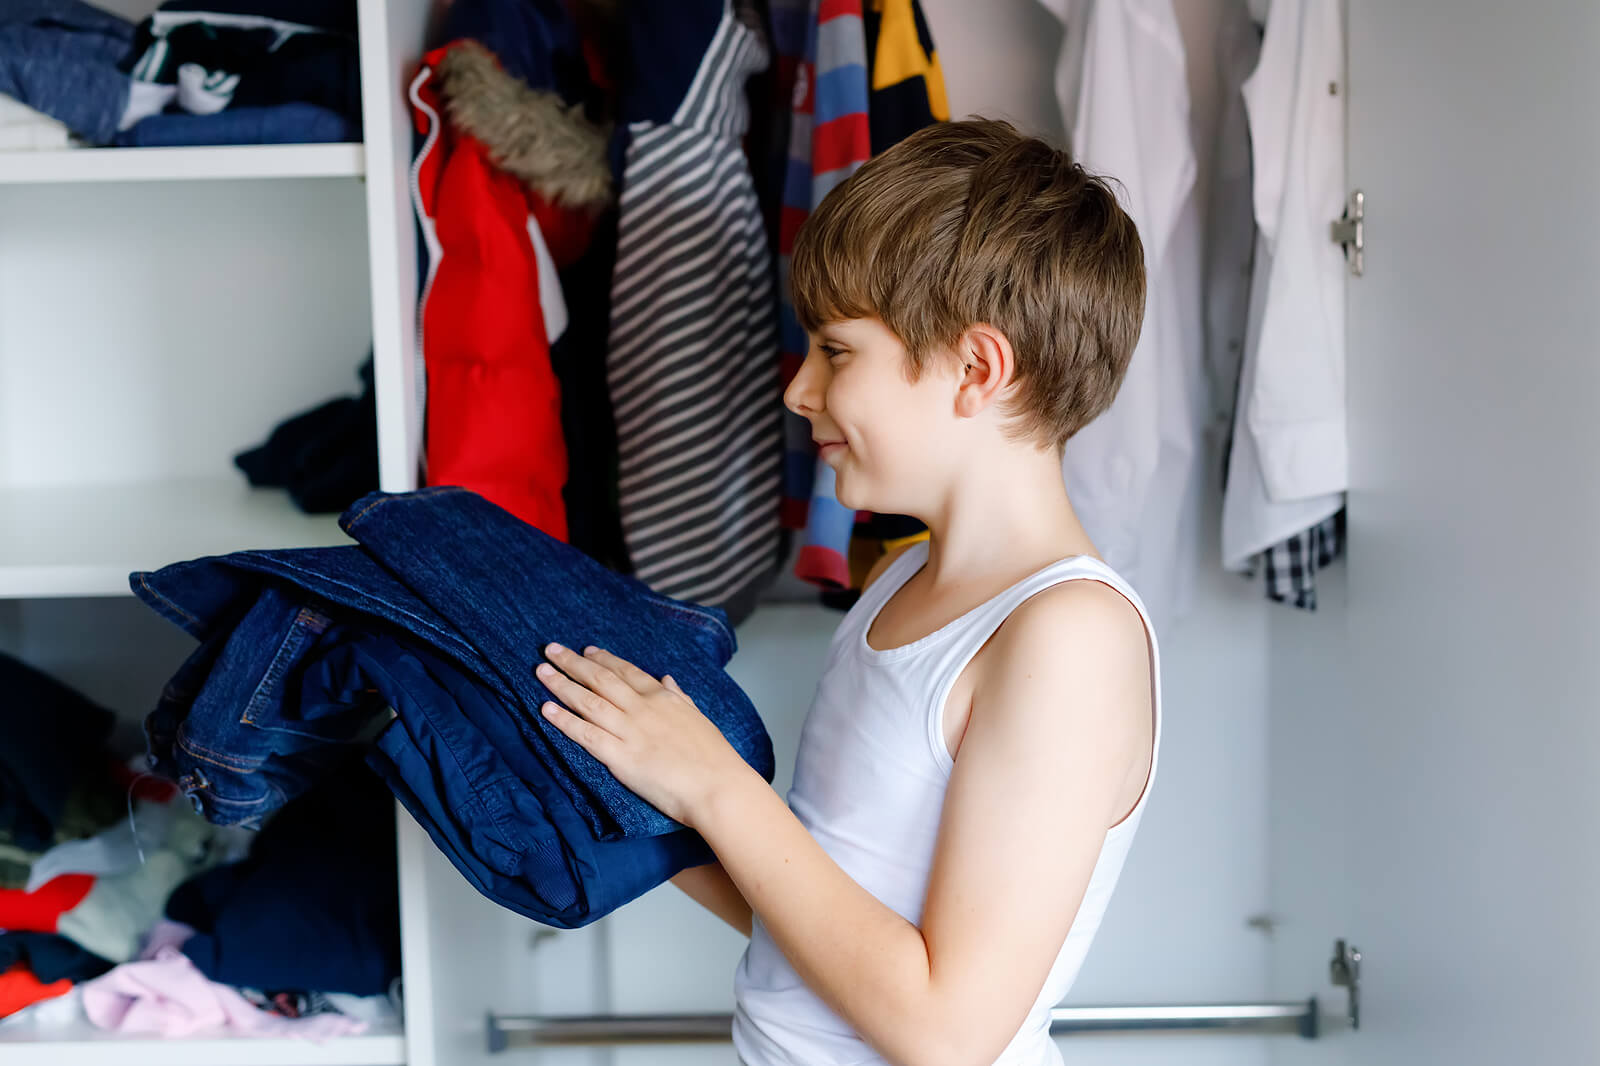 Criança organizando as roupas em seu armário.